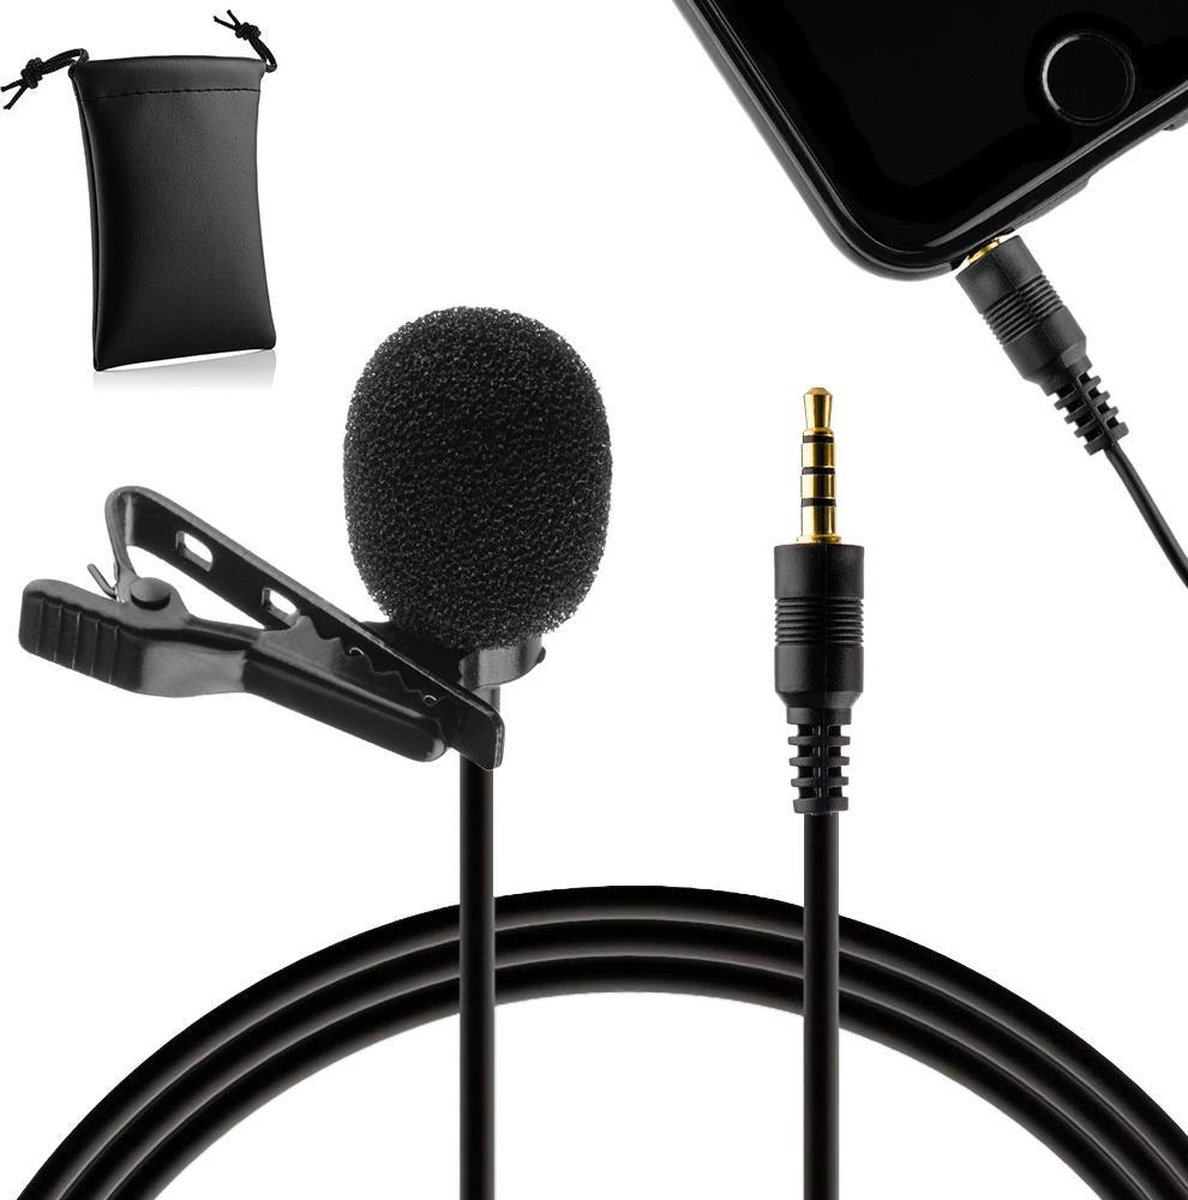 MOJOGEAR Speldmicrofoon voor iPhone en Android smartphones - 1,5 meter kabel - 3.5 mm koptelefoon-aansluiting - Zwart